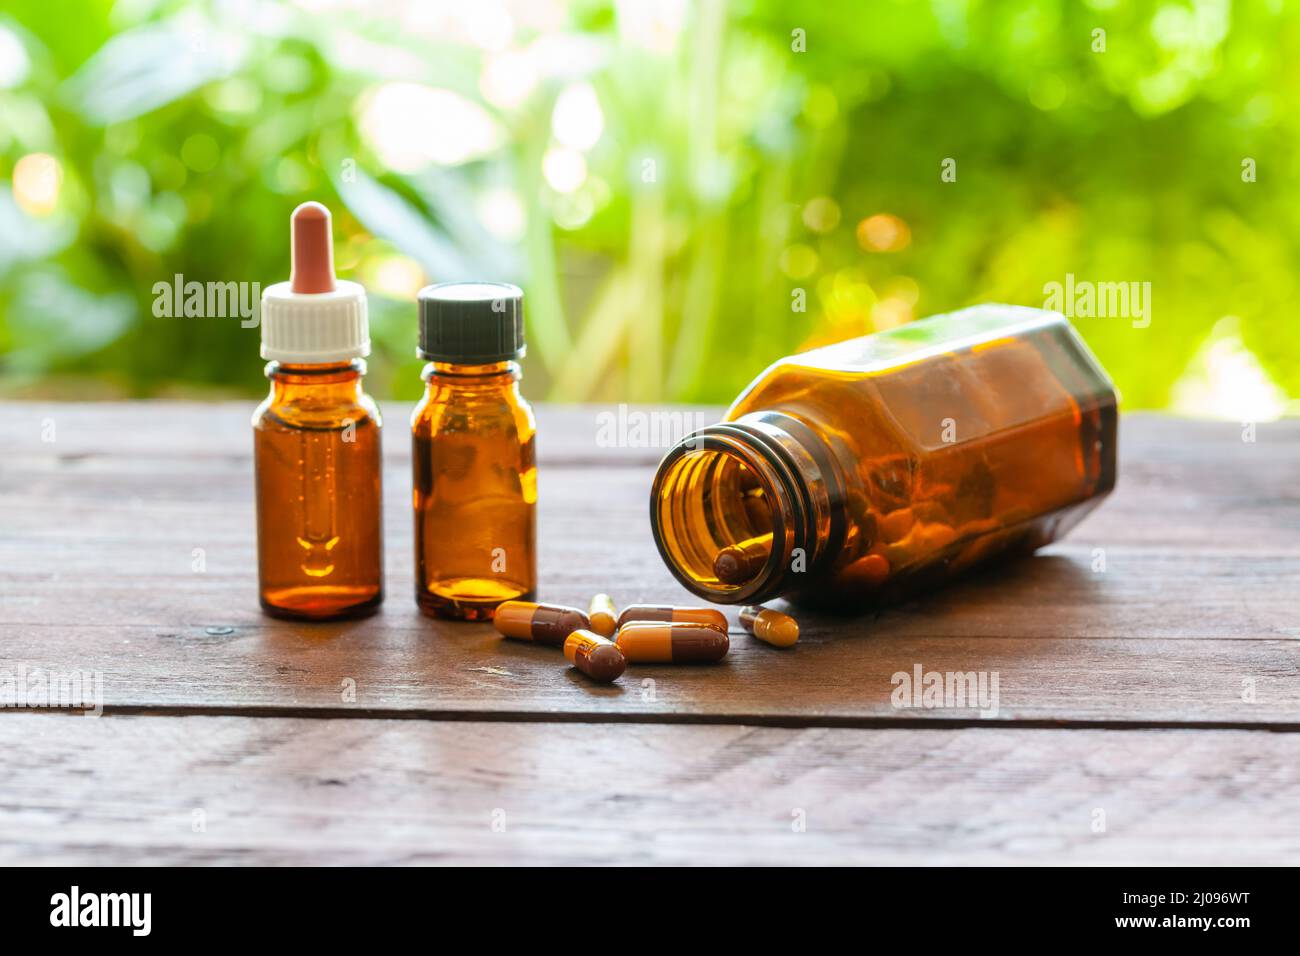 Quelques bouteilles et capsules médicales brunes sur une table en bois. Concept homéopathique. Mise au point au premier plan. Banque D'Images